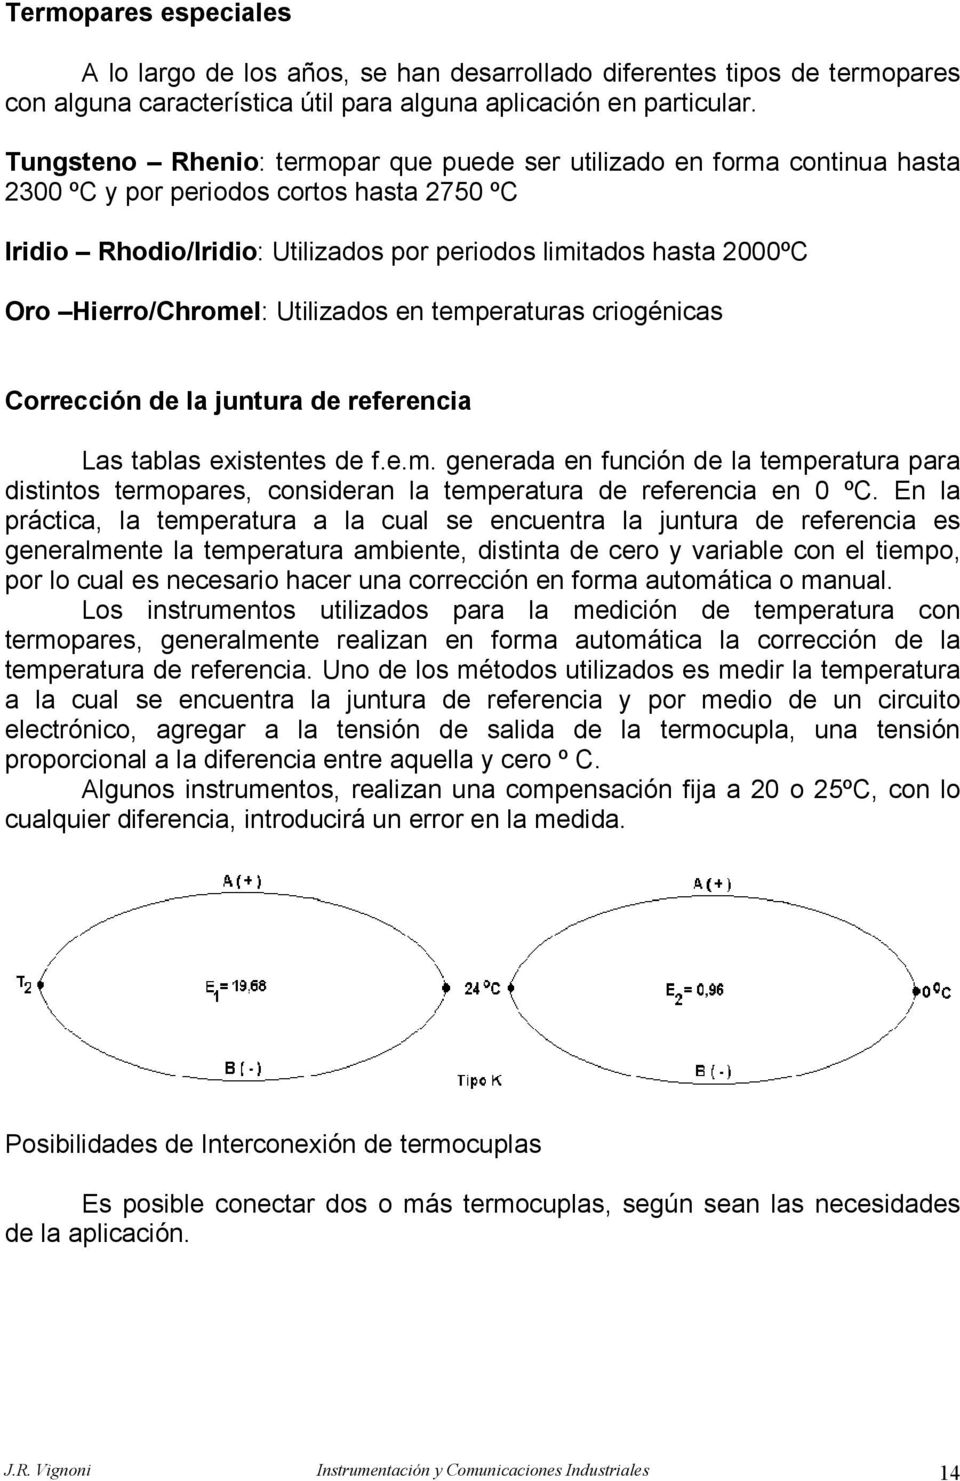 Hierro/Chromel: Utilizados en temperaturas criogénicas Corrección de la juntura de referencia Las tablas existentes de f.e.m. generada en función de la temperatura para distintos termopares, consideran la temperatura de referencia en 0 ºC.